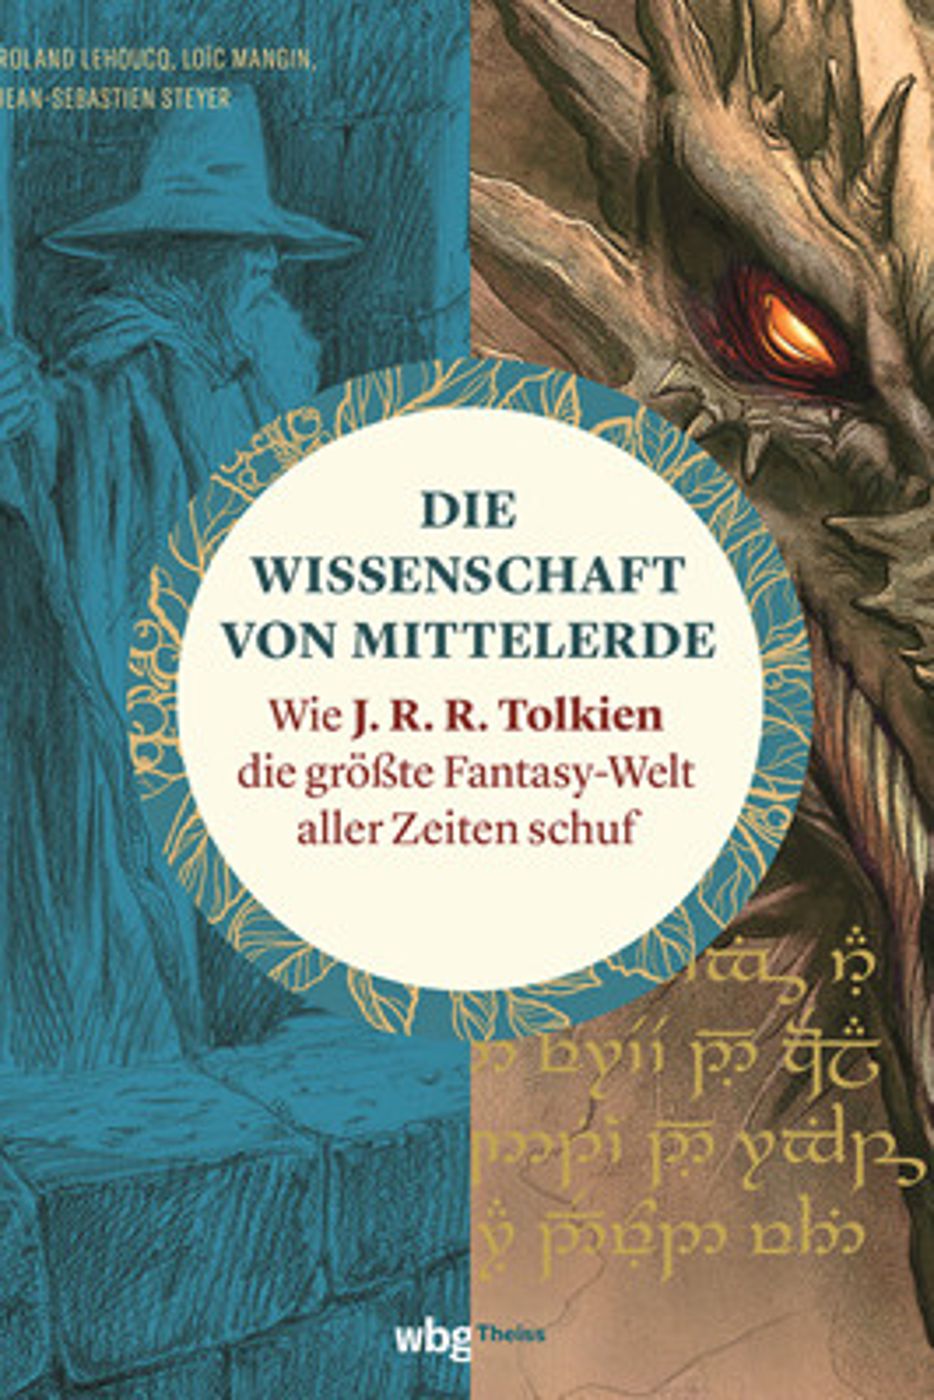 Wissenschaftliche Reise durch Tolkiens Welt: Ein neues Buch geht der Frage nach, wie viel Realität in dem berühmten Fantasy-Stoff steckt.